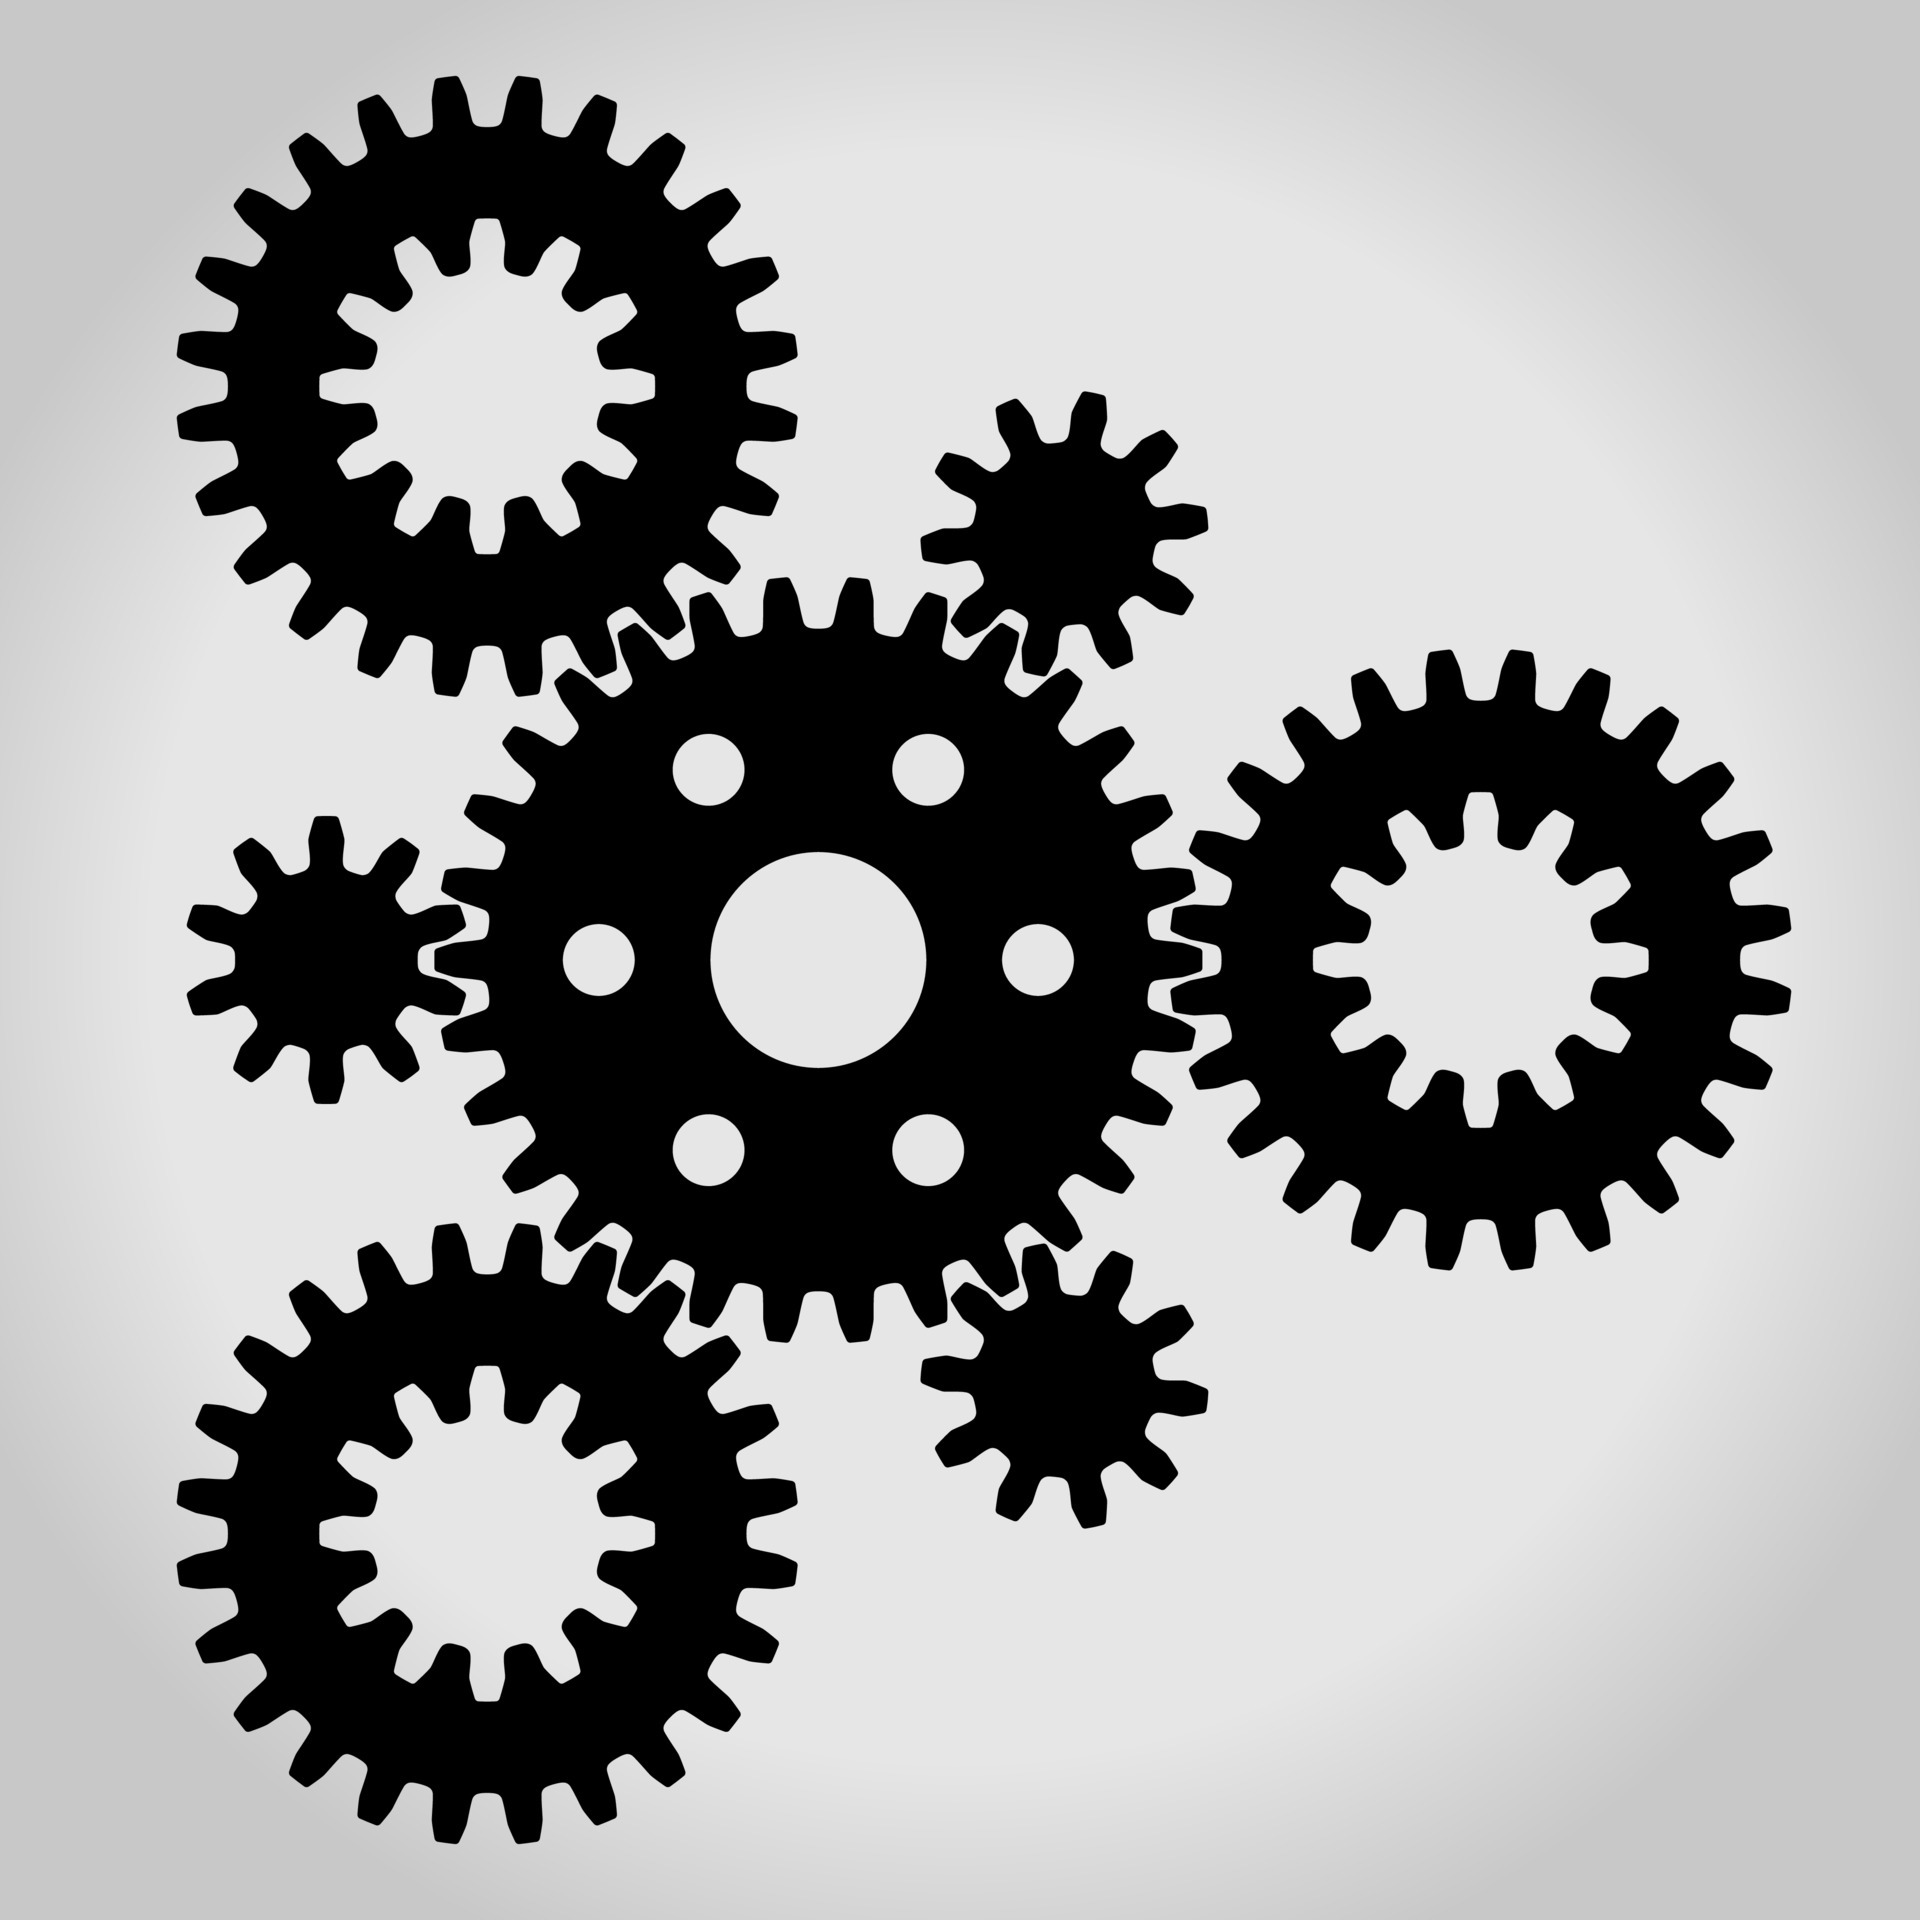 https://static.vecteezy.com/ti/gratis-vektor/p3/5426420-schwarze-silhouette-mechanische-getriebe-und-zahnradsatz-klein-und-gross-angeordnet-in-einem-dreieck-illustration-vektor.jpg